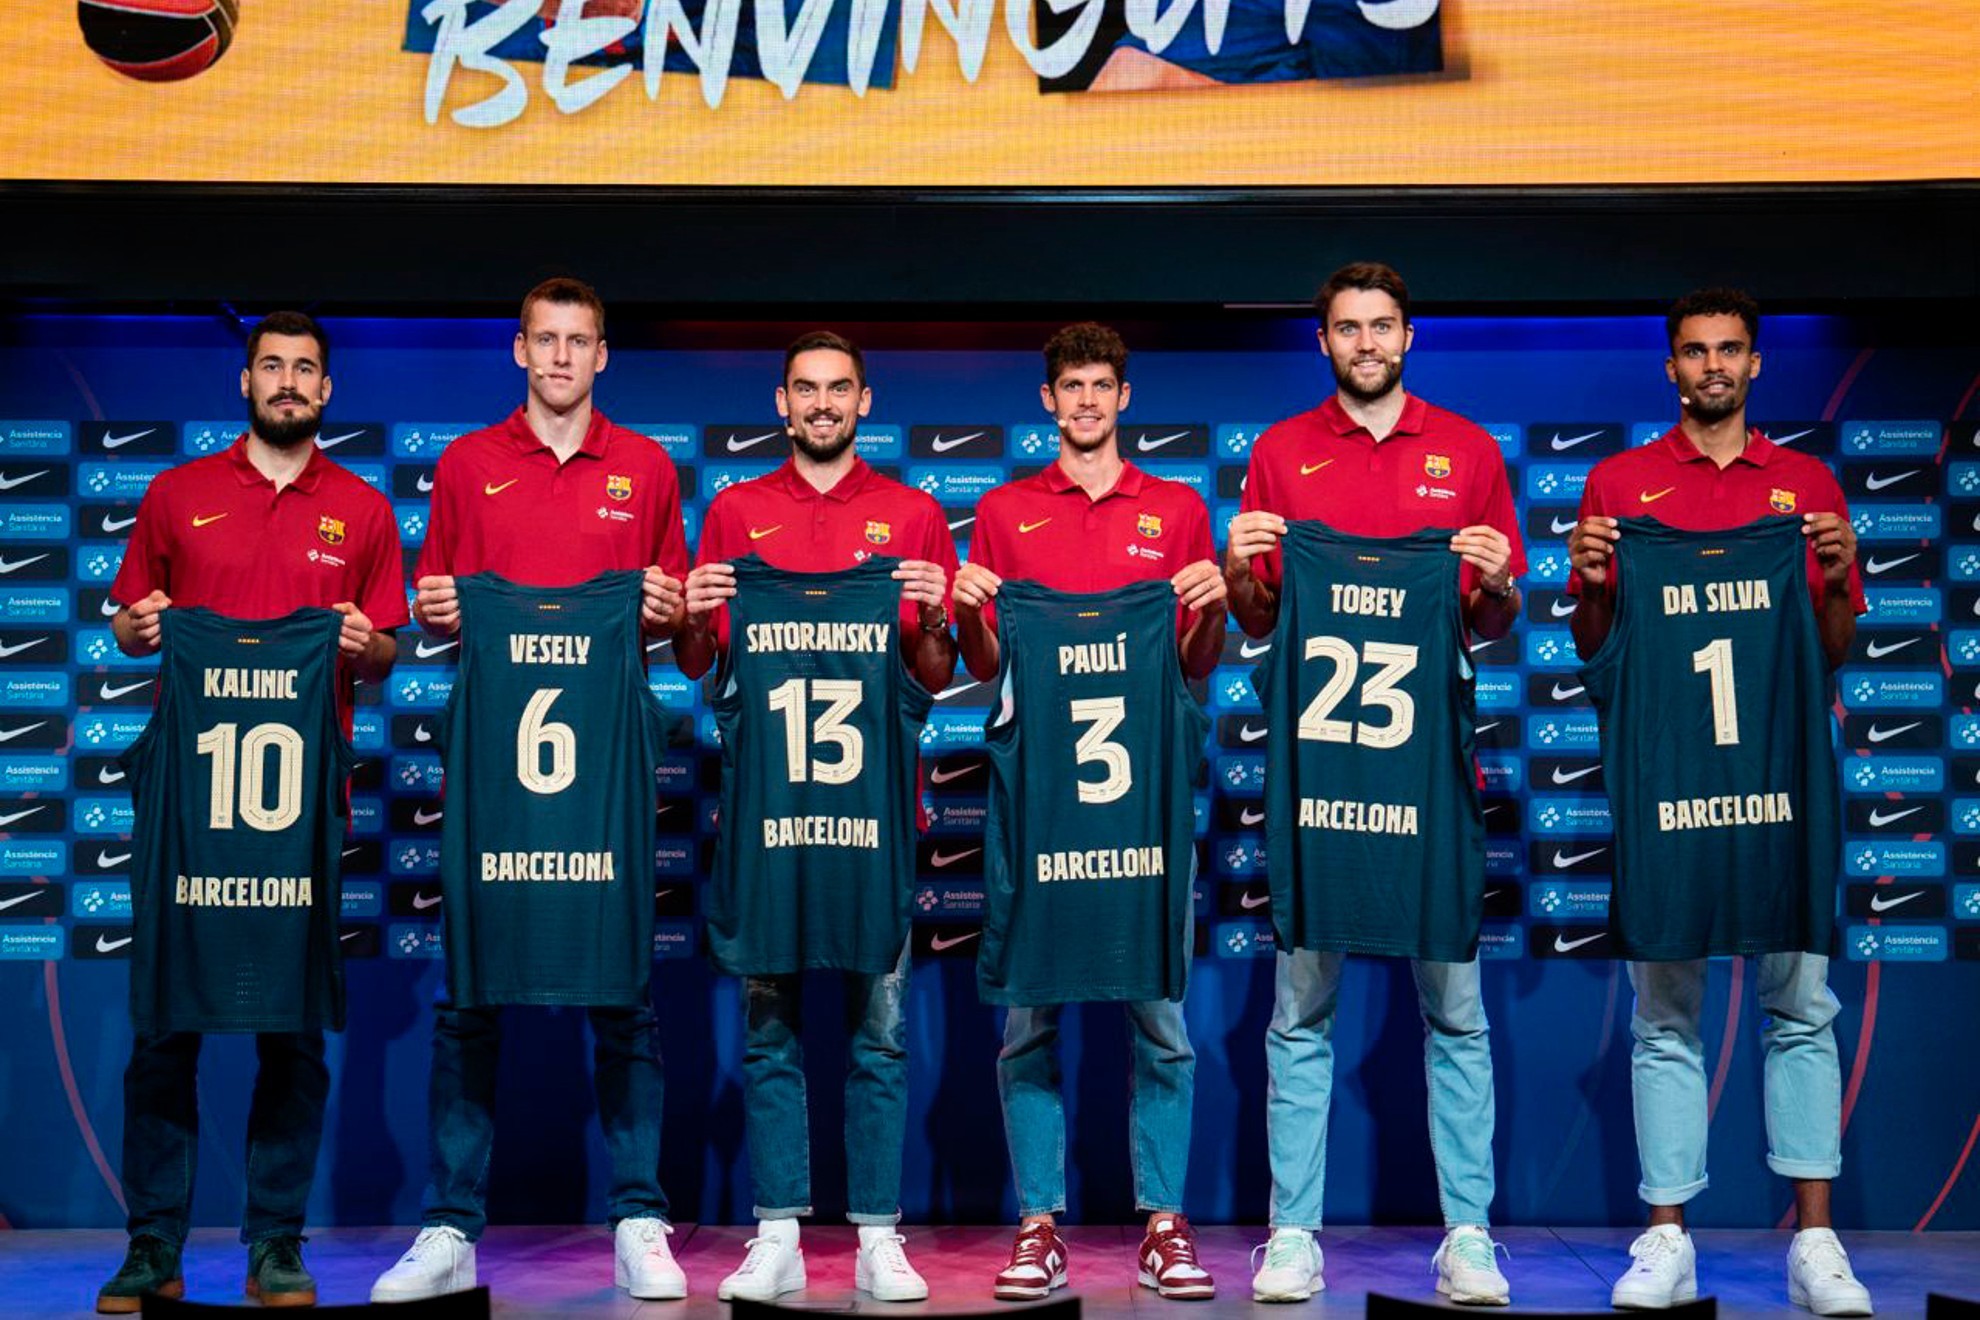 Kalinic, Vesely, Satoransky, Paulí, Tobey y Da Silva, los seis fichajes del Barcelona, en su presentación. FCB